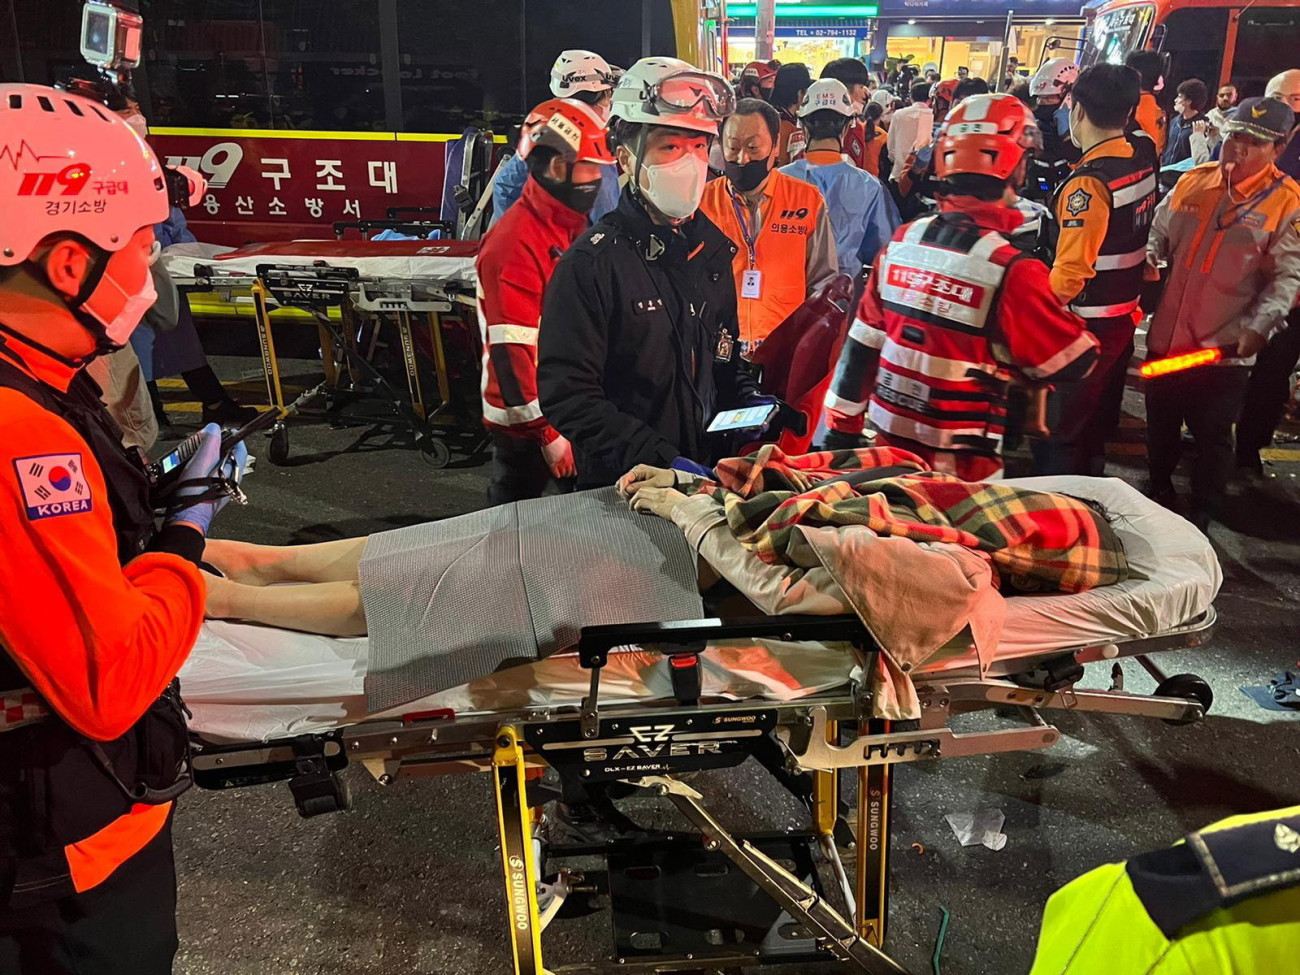 Szöul, 2022. október 29. Hordágyon szállítanak el mentősök egy sérültet Szöulban, ahol legkevesebb százhúsz ember meghalt, százan pedig megsérültek a halloween-ünnepségek idején az egyik szűk utcán kitört lökdösődésben 2022. október 29-én. MTI/EPA/Dzson Hon Kjun